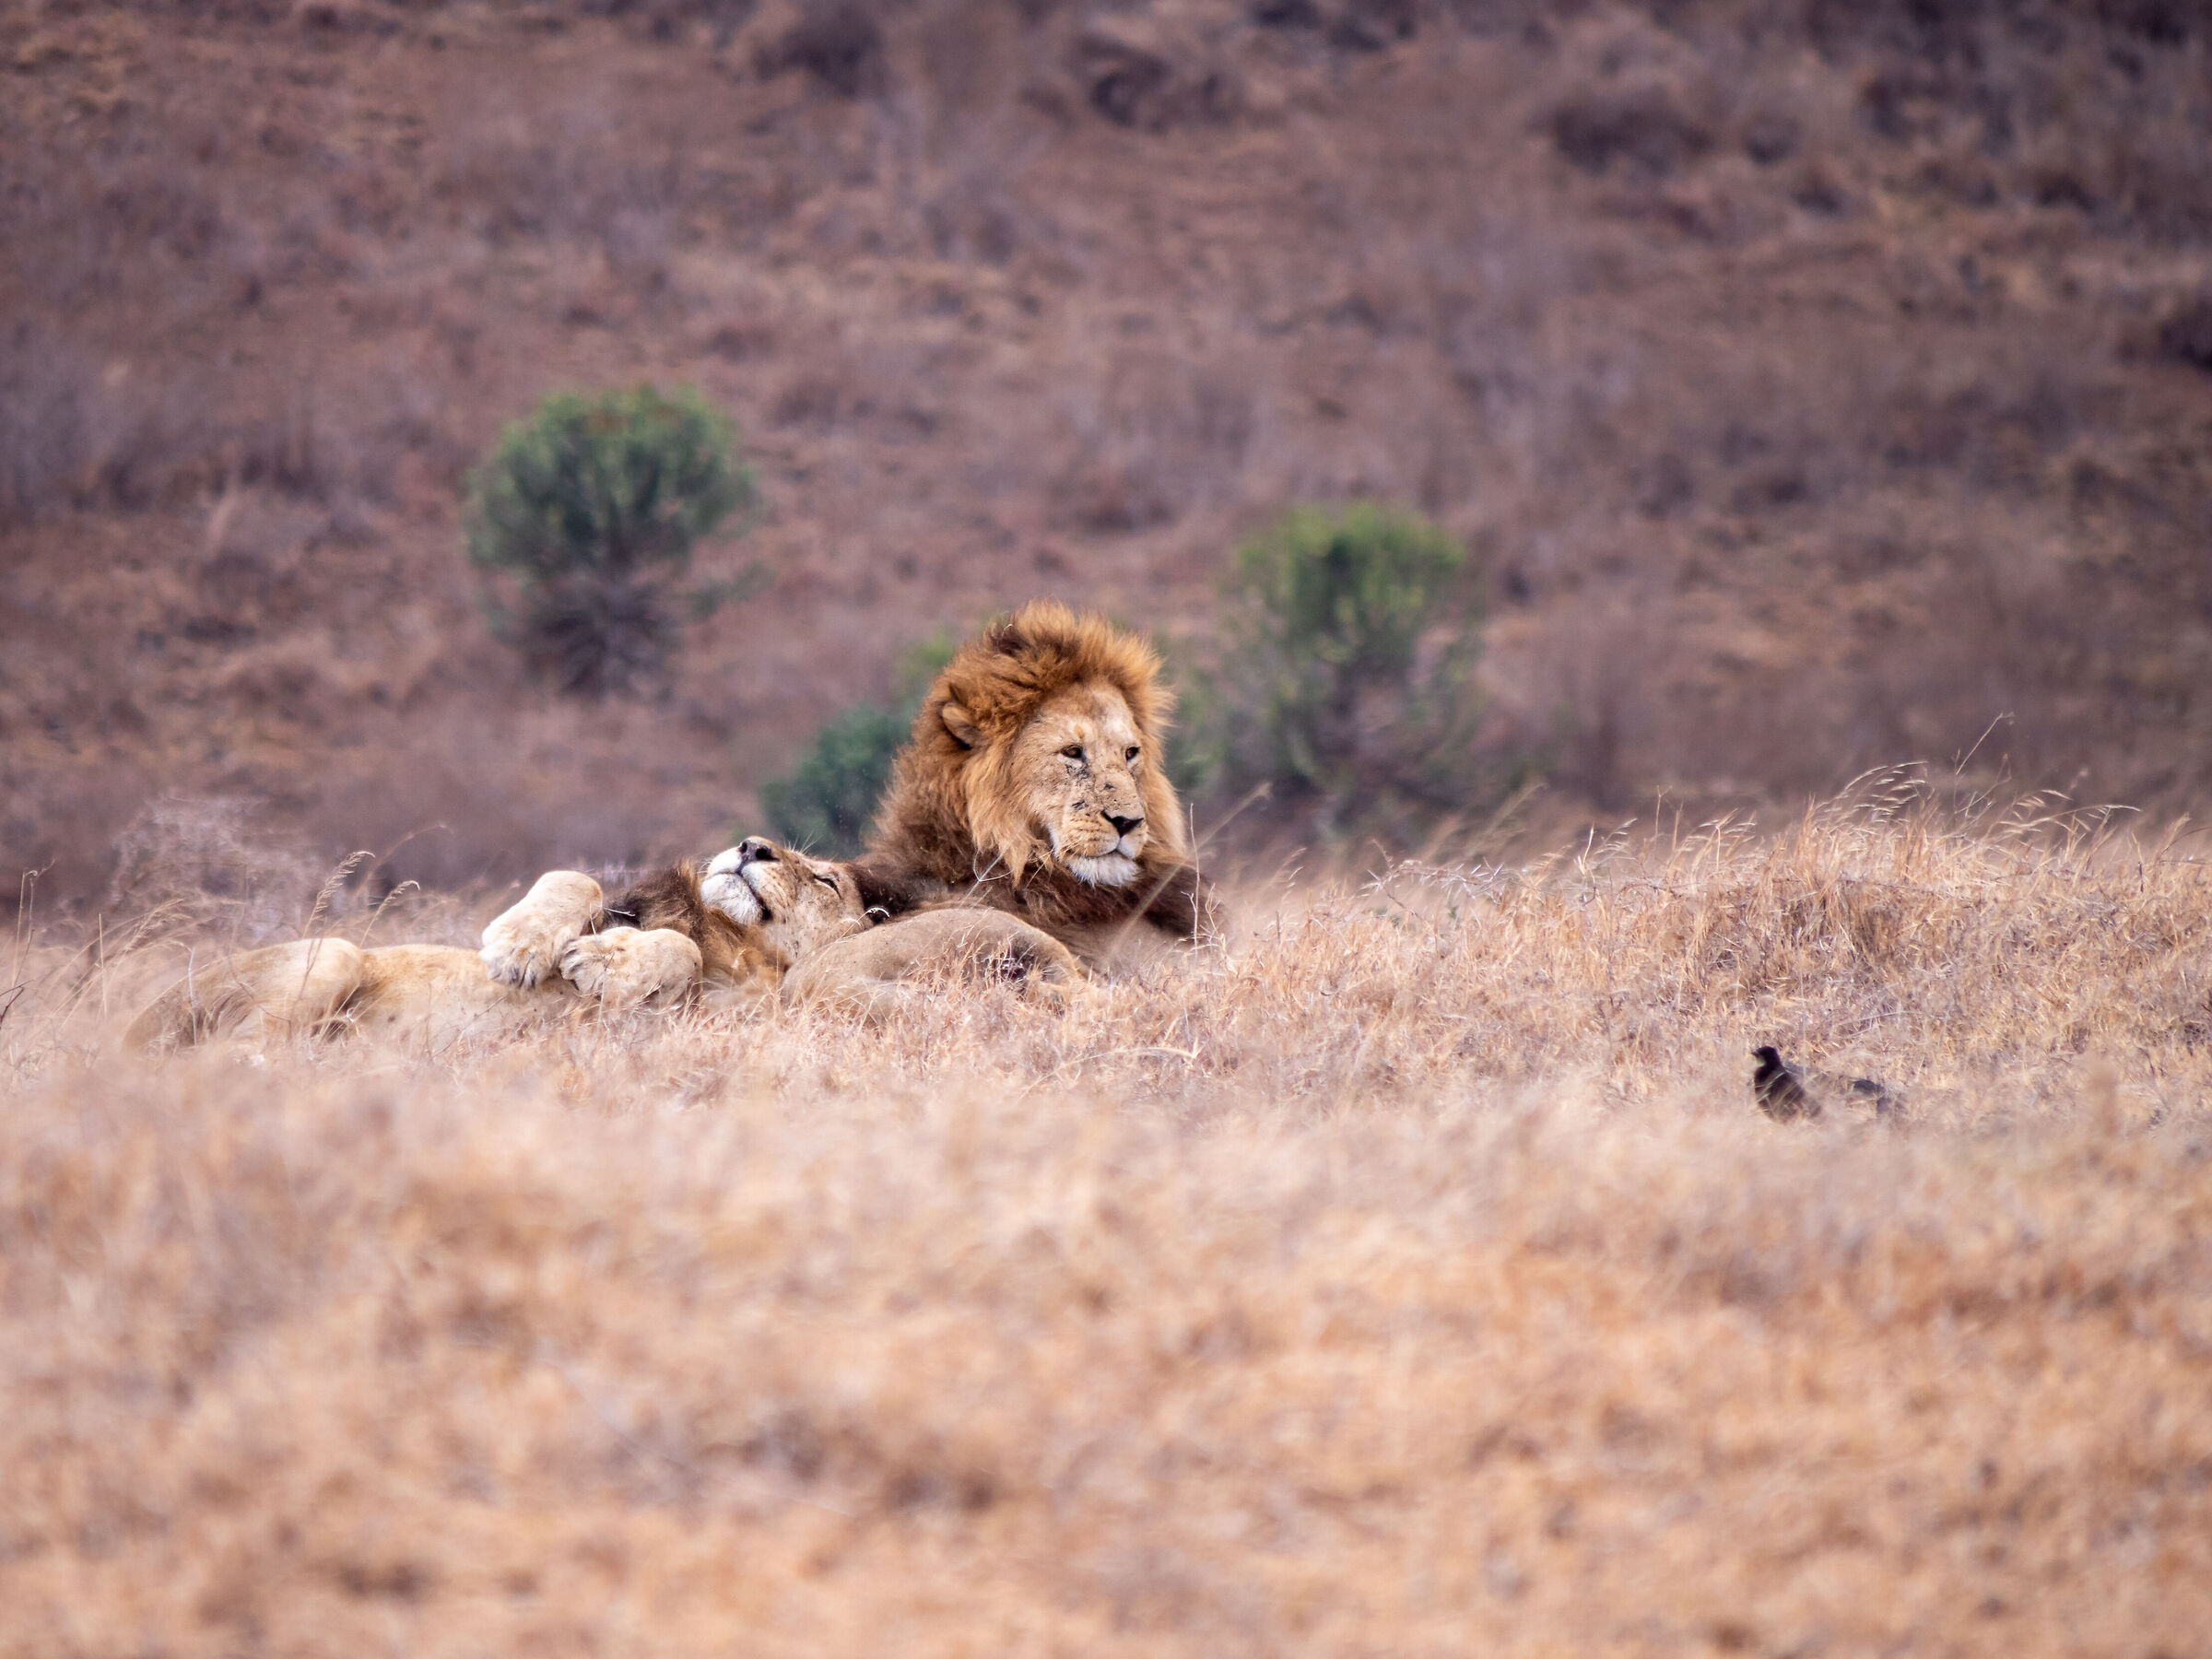 Ngorongoro Lion#1...